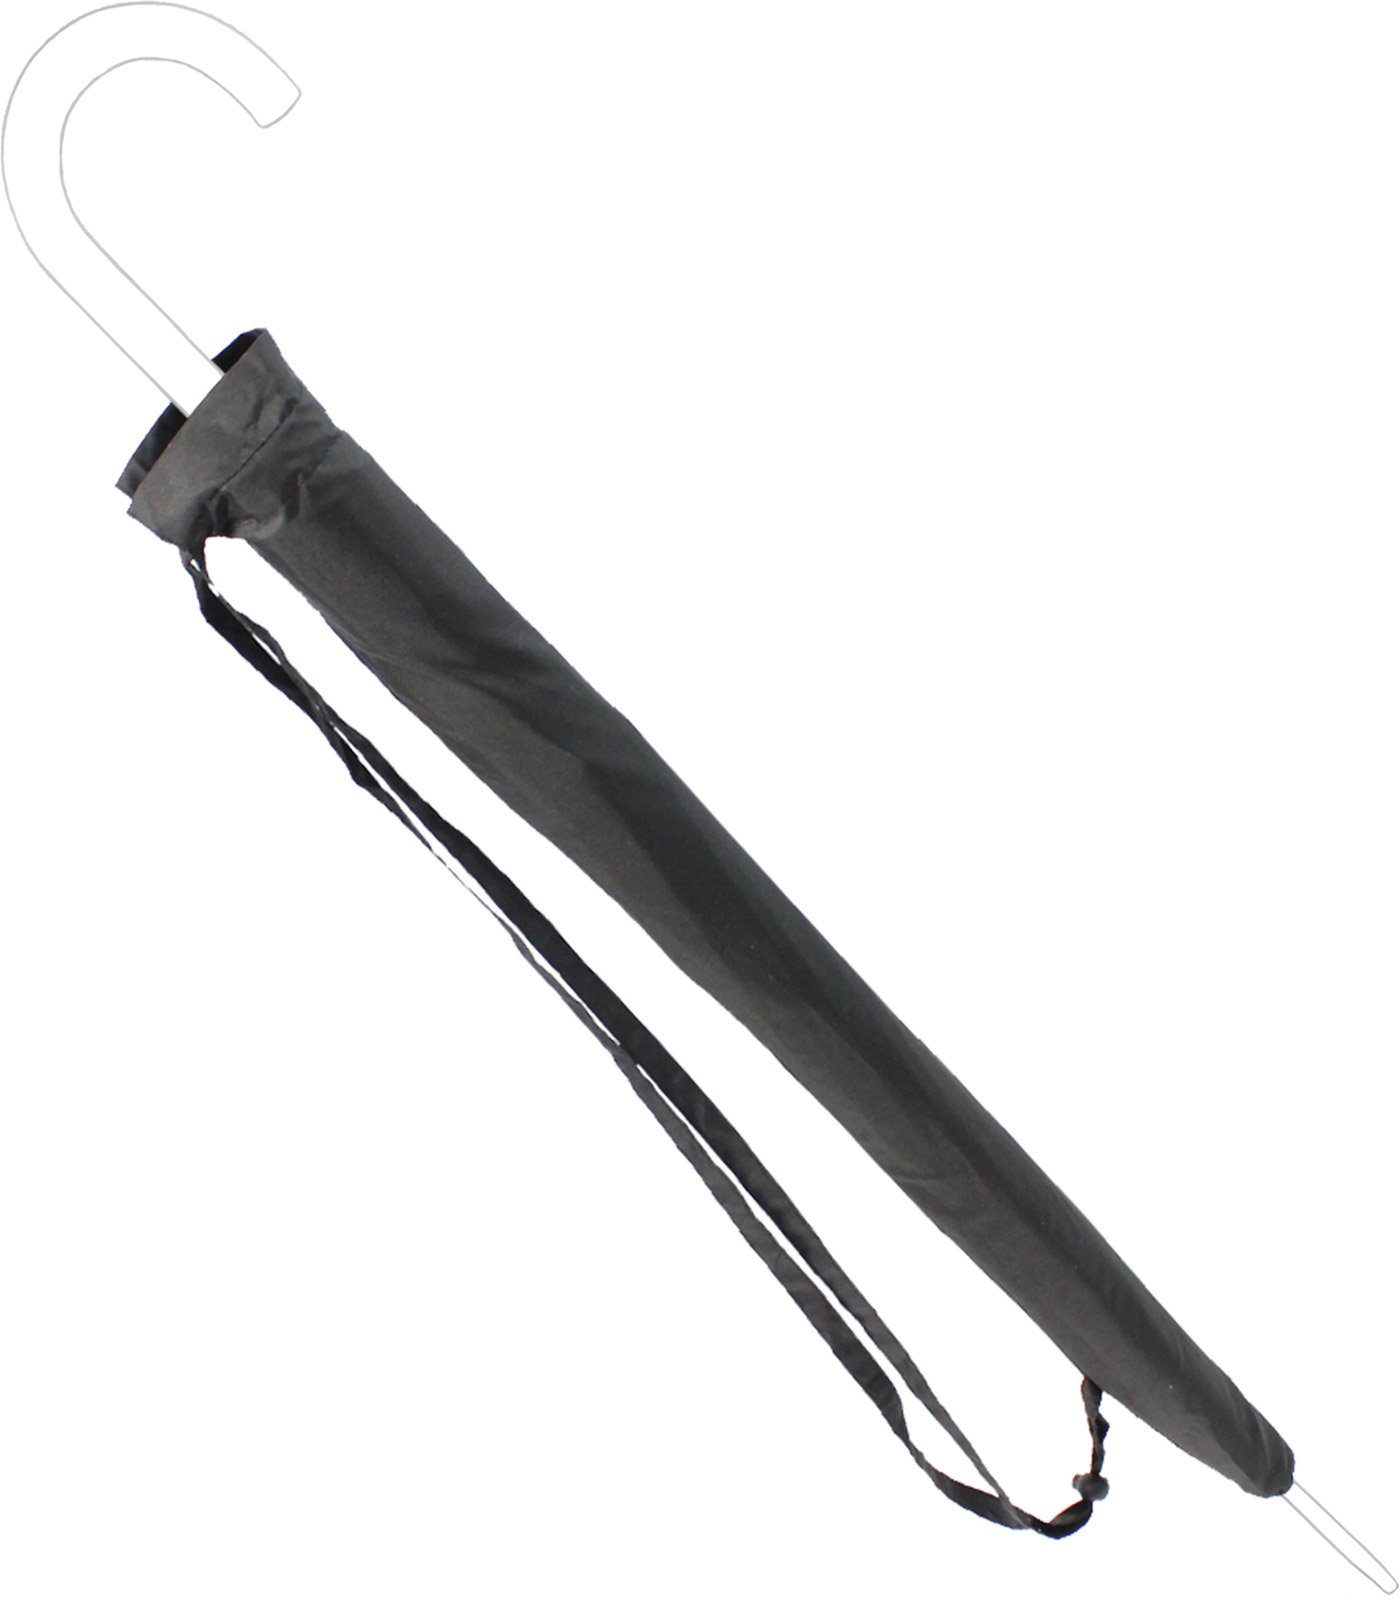 Schutzhülle schwarz-Gr.XL iX-brella Regenschirm-Hülle zum Umhängen, Langregenschirm umhängbar -